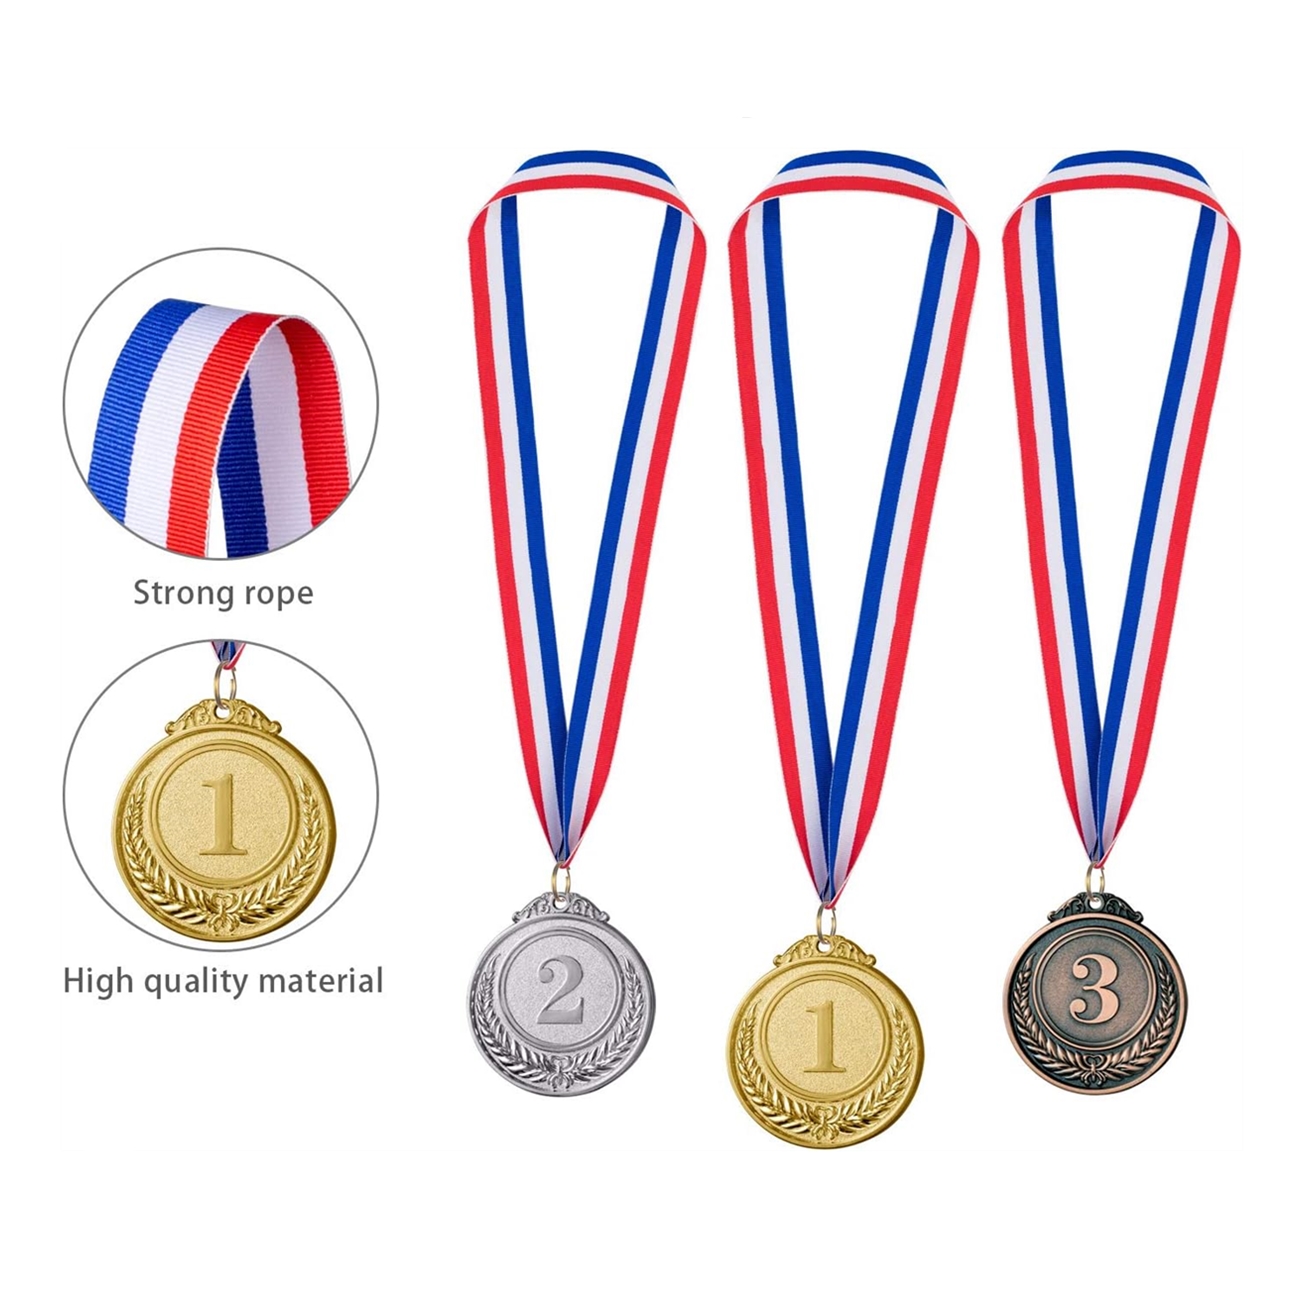 Trophee - Limics24 - 12 Médailles Récompense Métal Doré Argenté Bronze  Ruban Cou Vainqueur Style Olympique Dorées